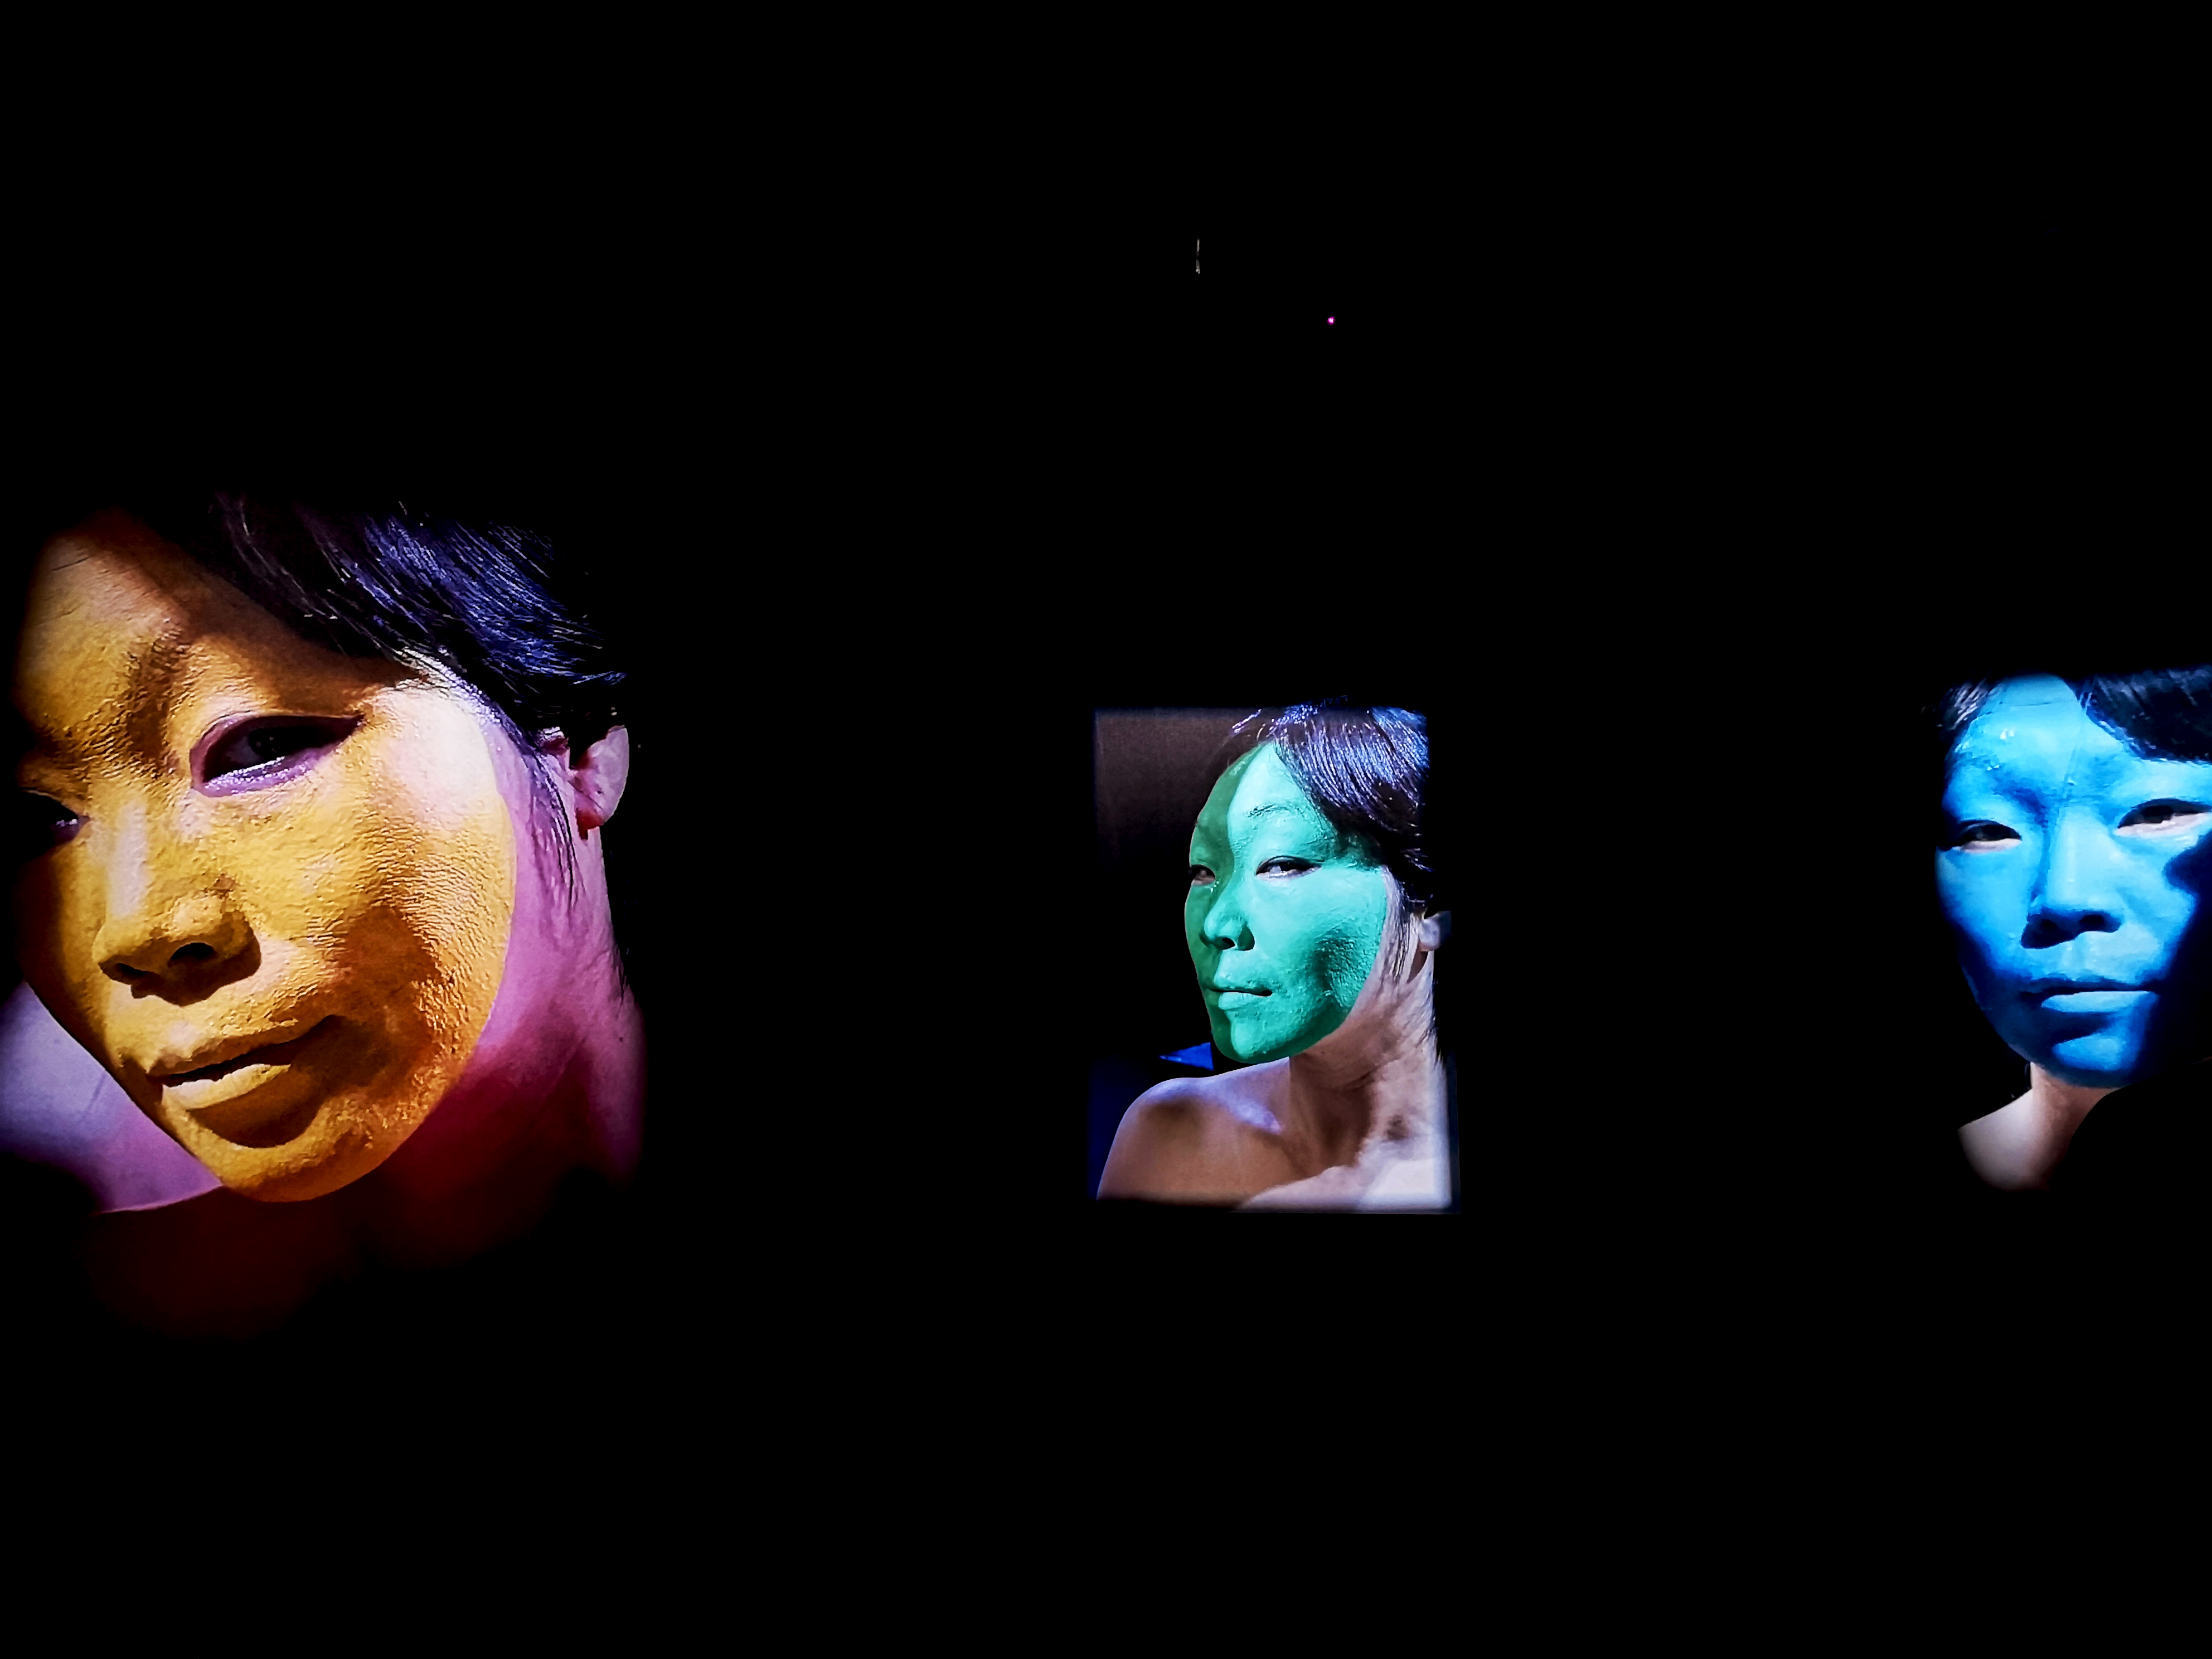 图11 杨青青,《我从不露出真相》, 2018, 影像成诗——新影像 不止所见展览现场，上海当代艺术馆（MoCA Shanghai)，2018年